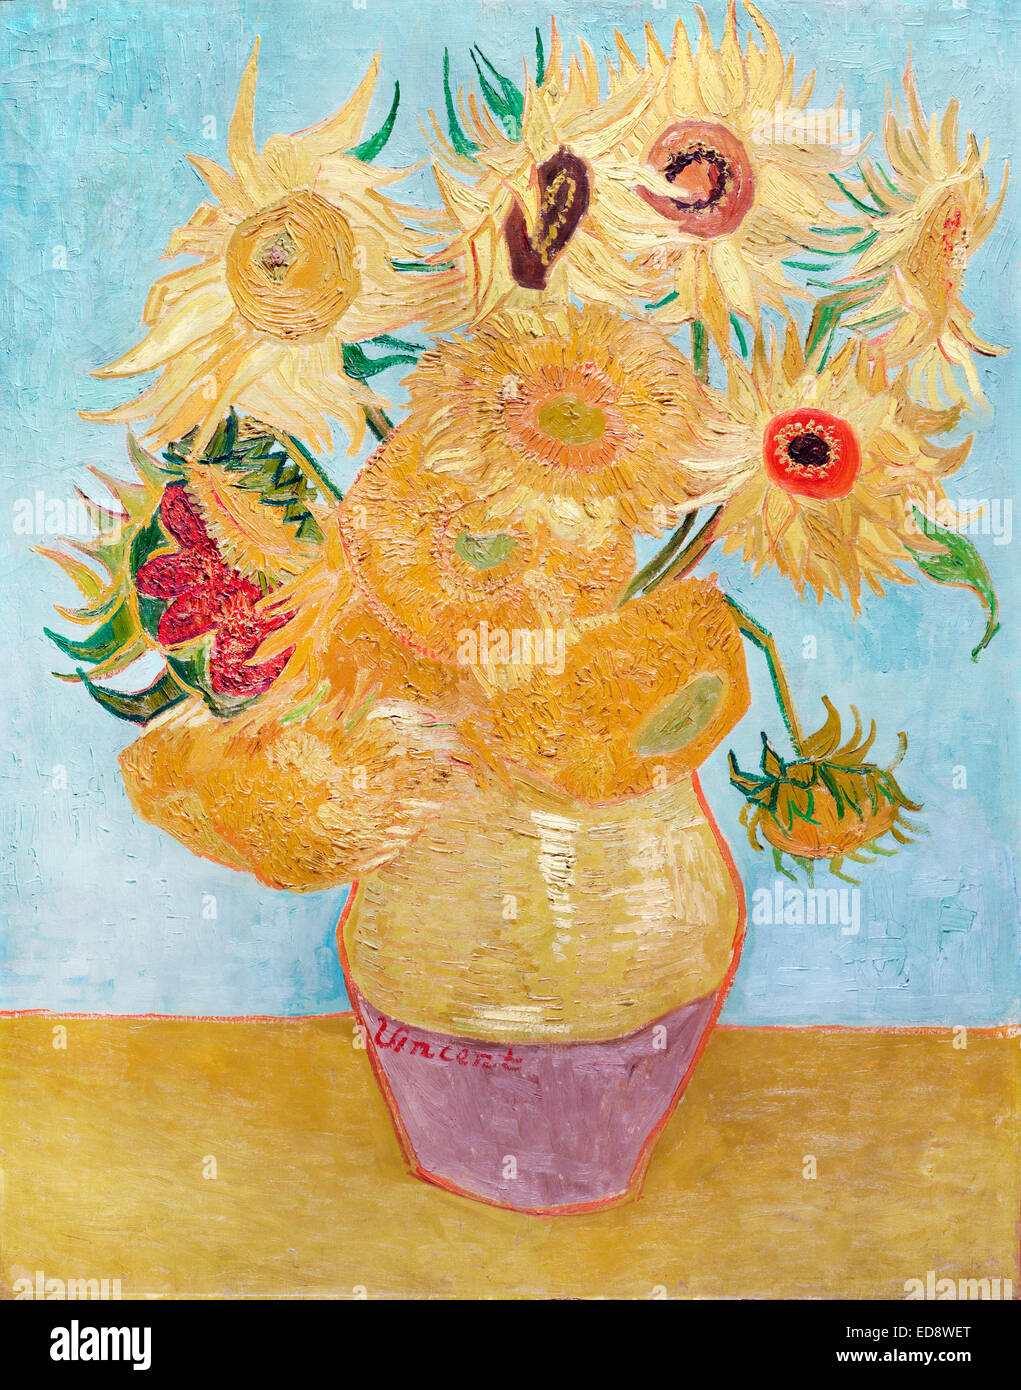 Vincent van Gogh, les Tournesols 1889 Huile sur toile. Philadelphia Museum of Art, New York, USA. Banque D'Images